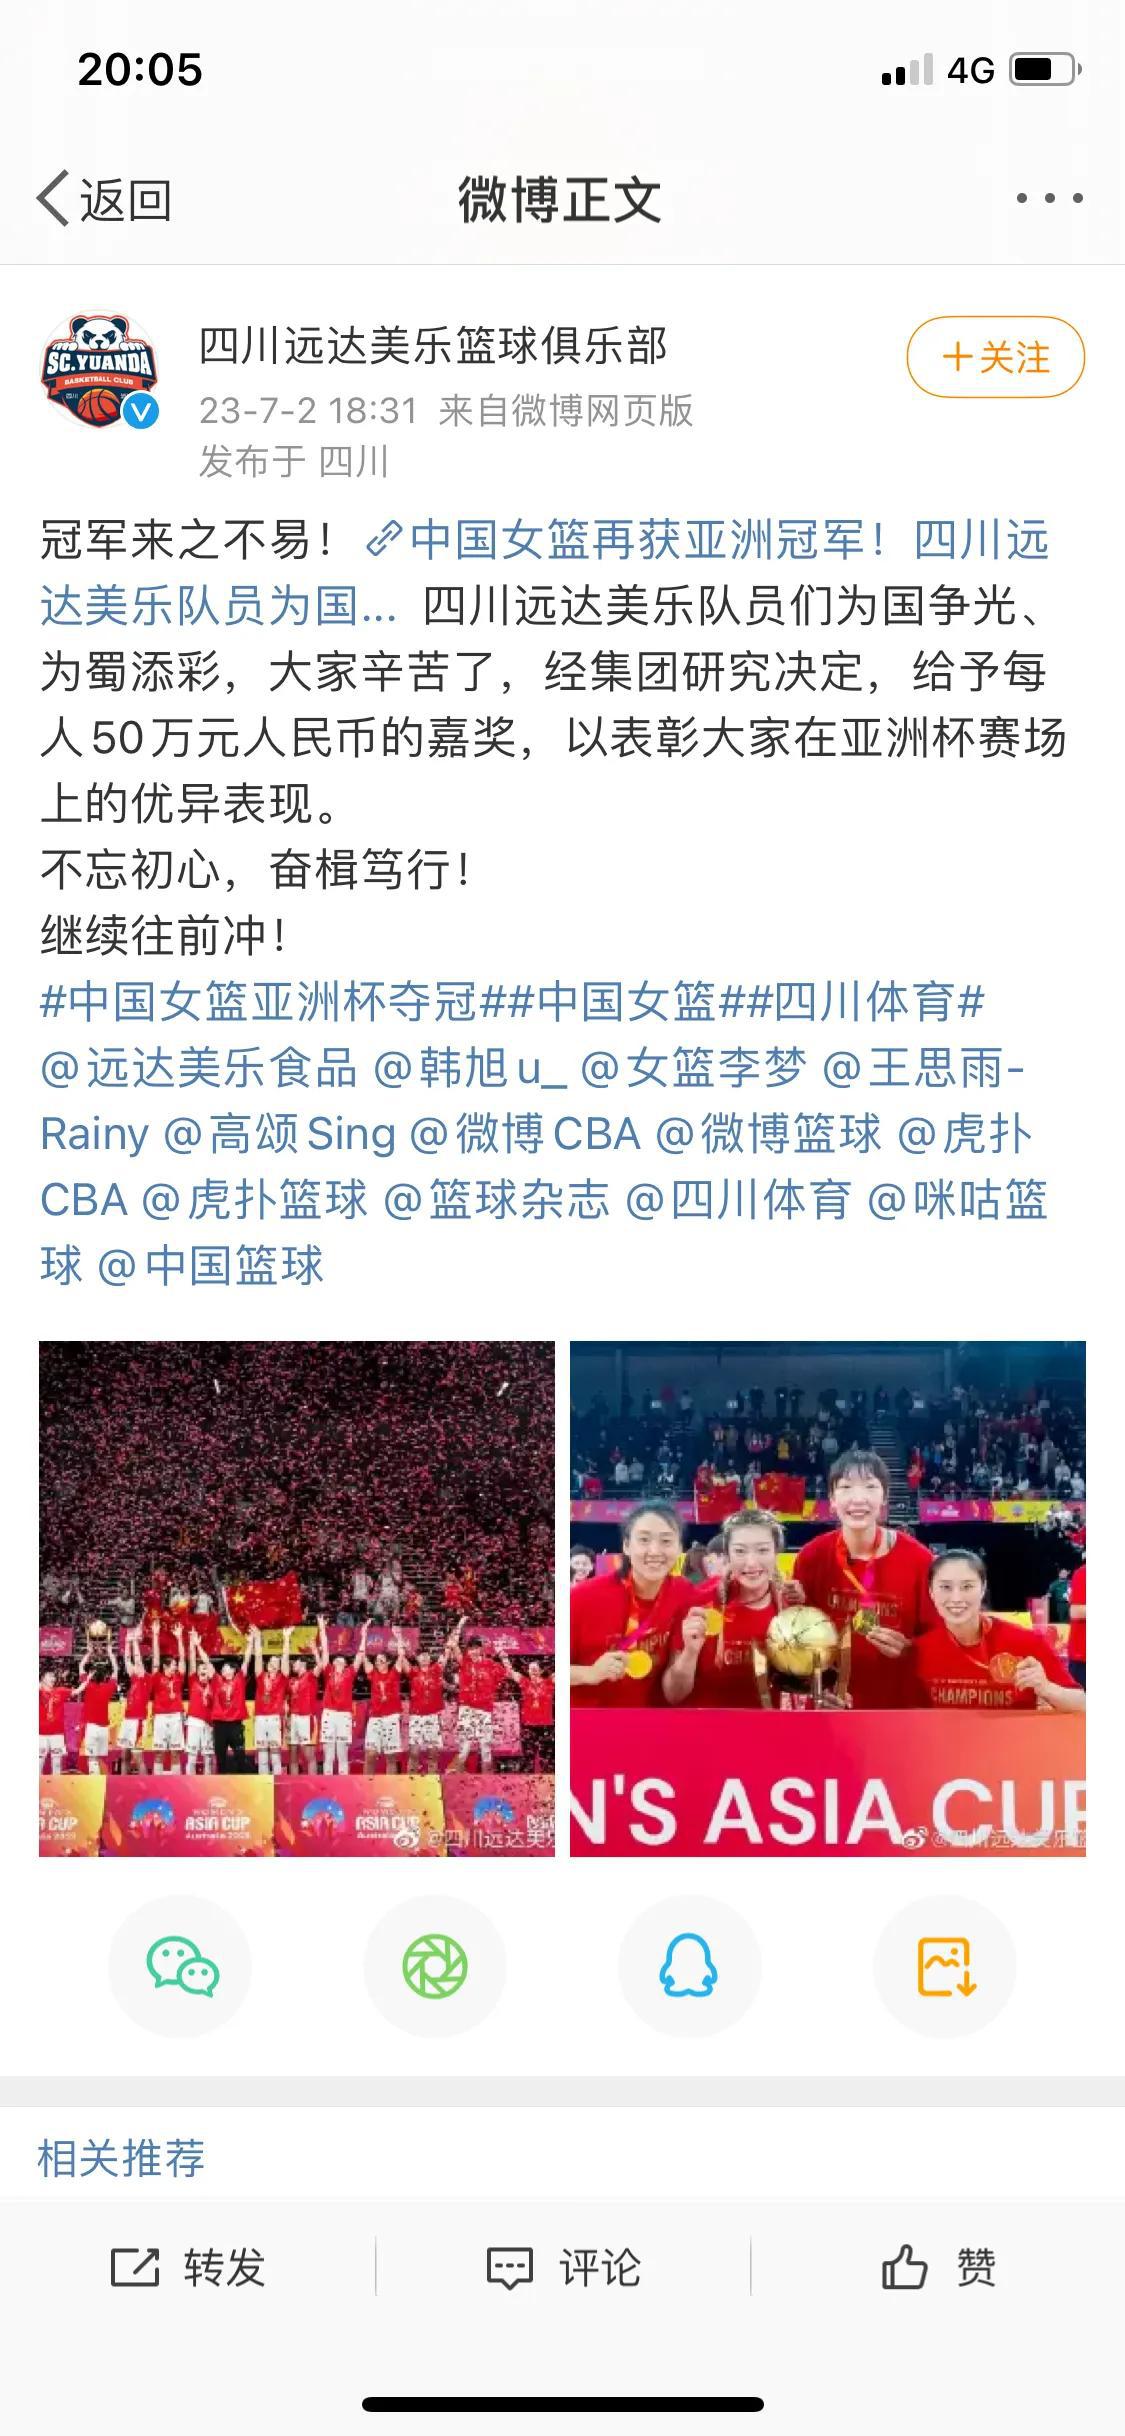 应该给中国女篮姑娘们进行现金奖励！

今天下午中国女篮获得冠军之后，四川女篮俱乐(1)